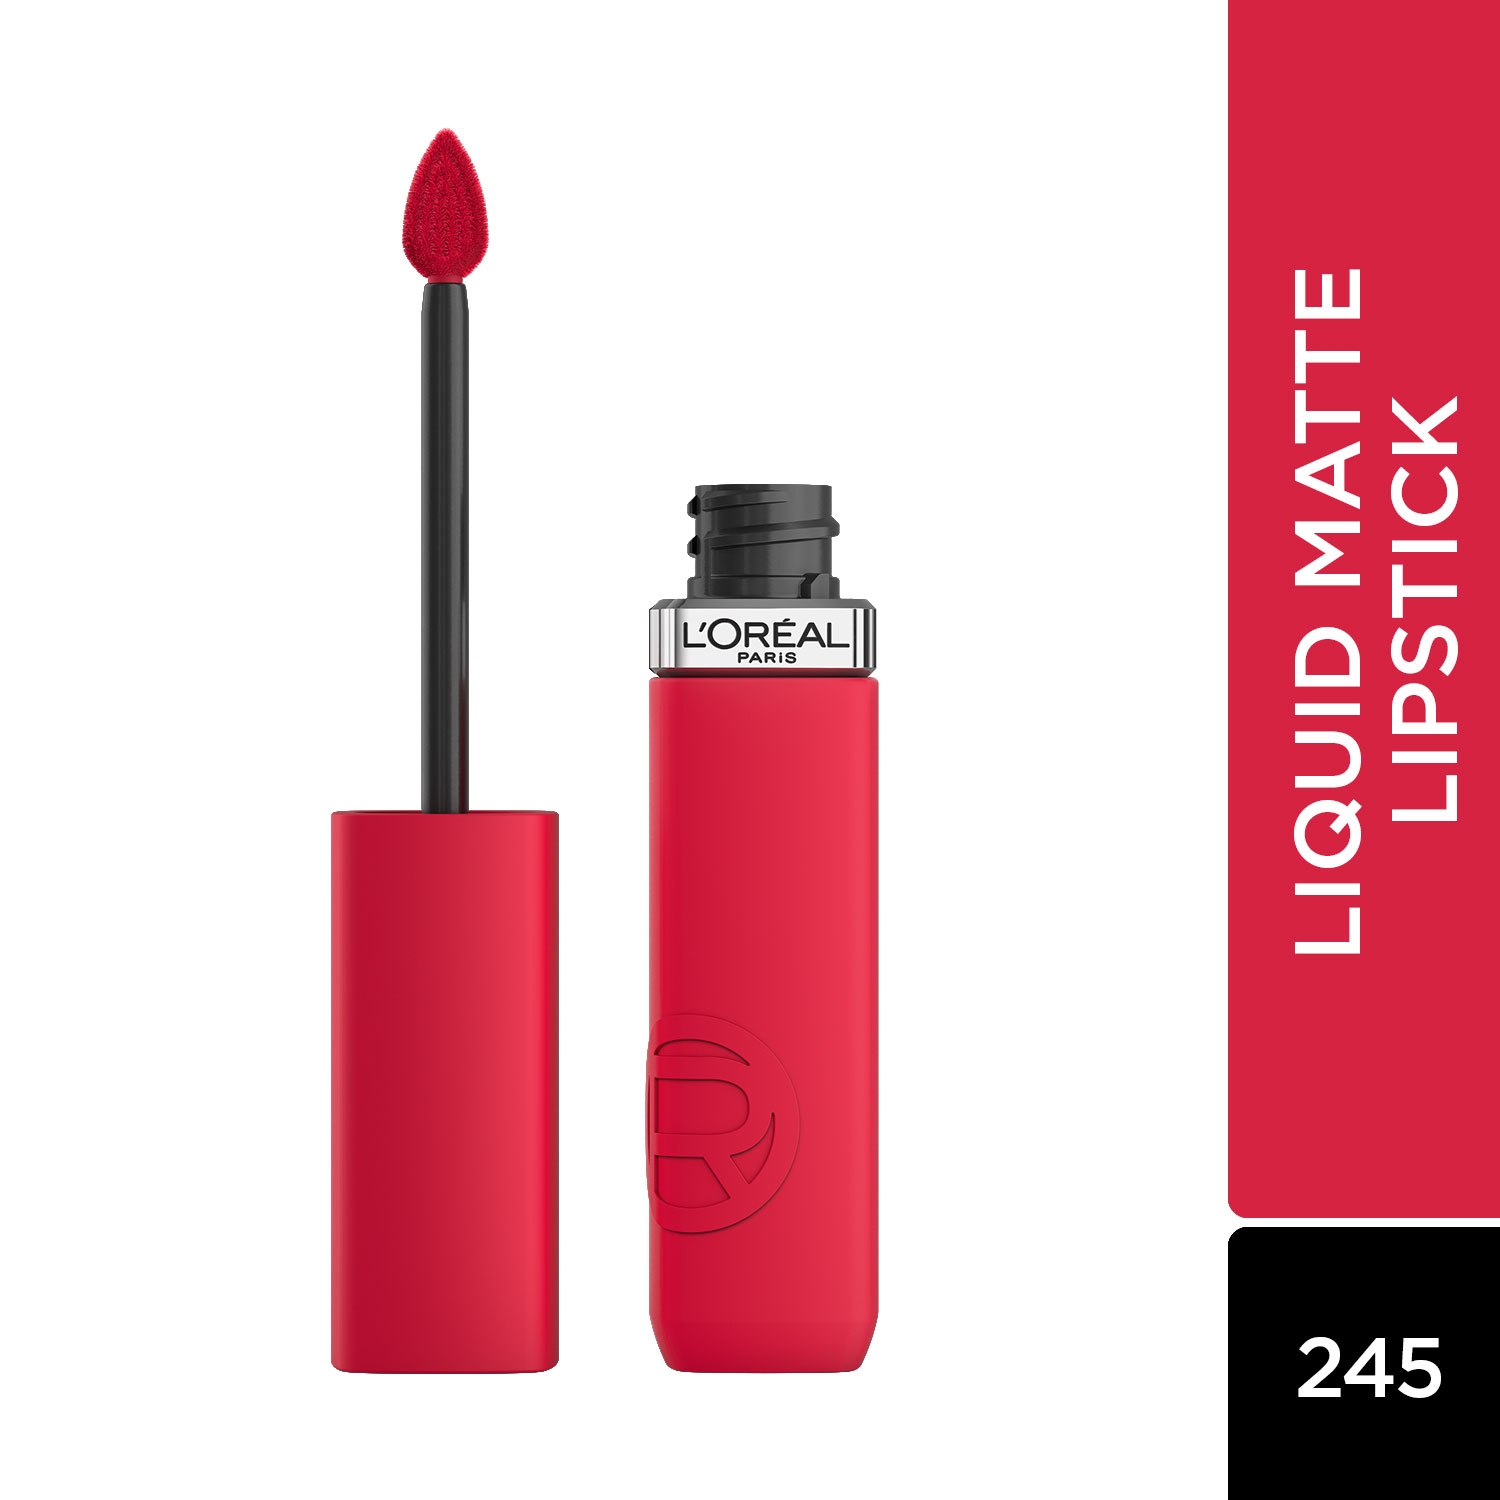 L'Oreal Paris | L'Oreal Paris Infallible Matte Resistance Liquid Lipstick - 245 French Kiss (5ml)